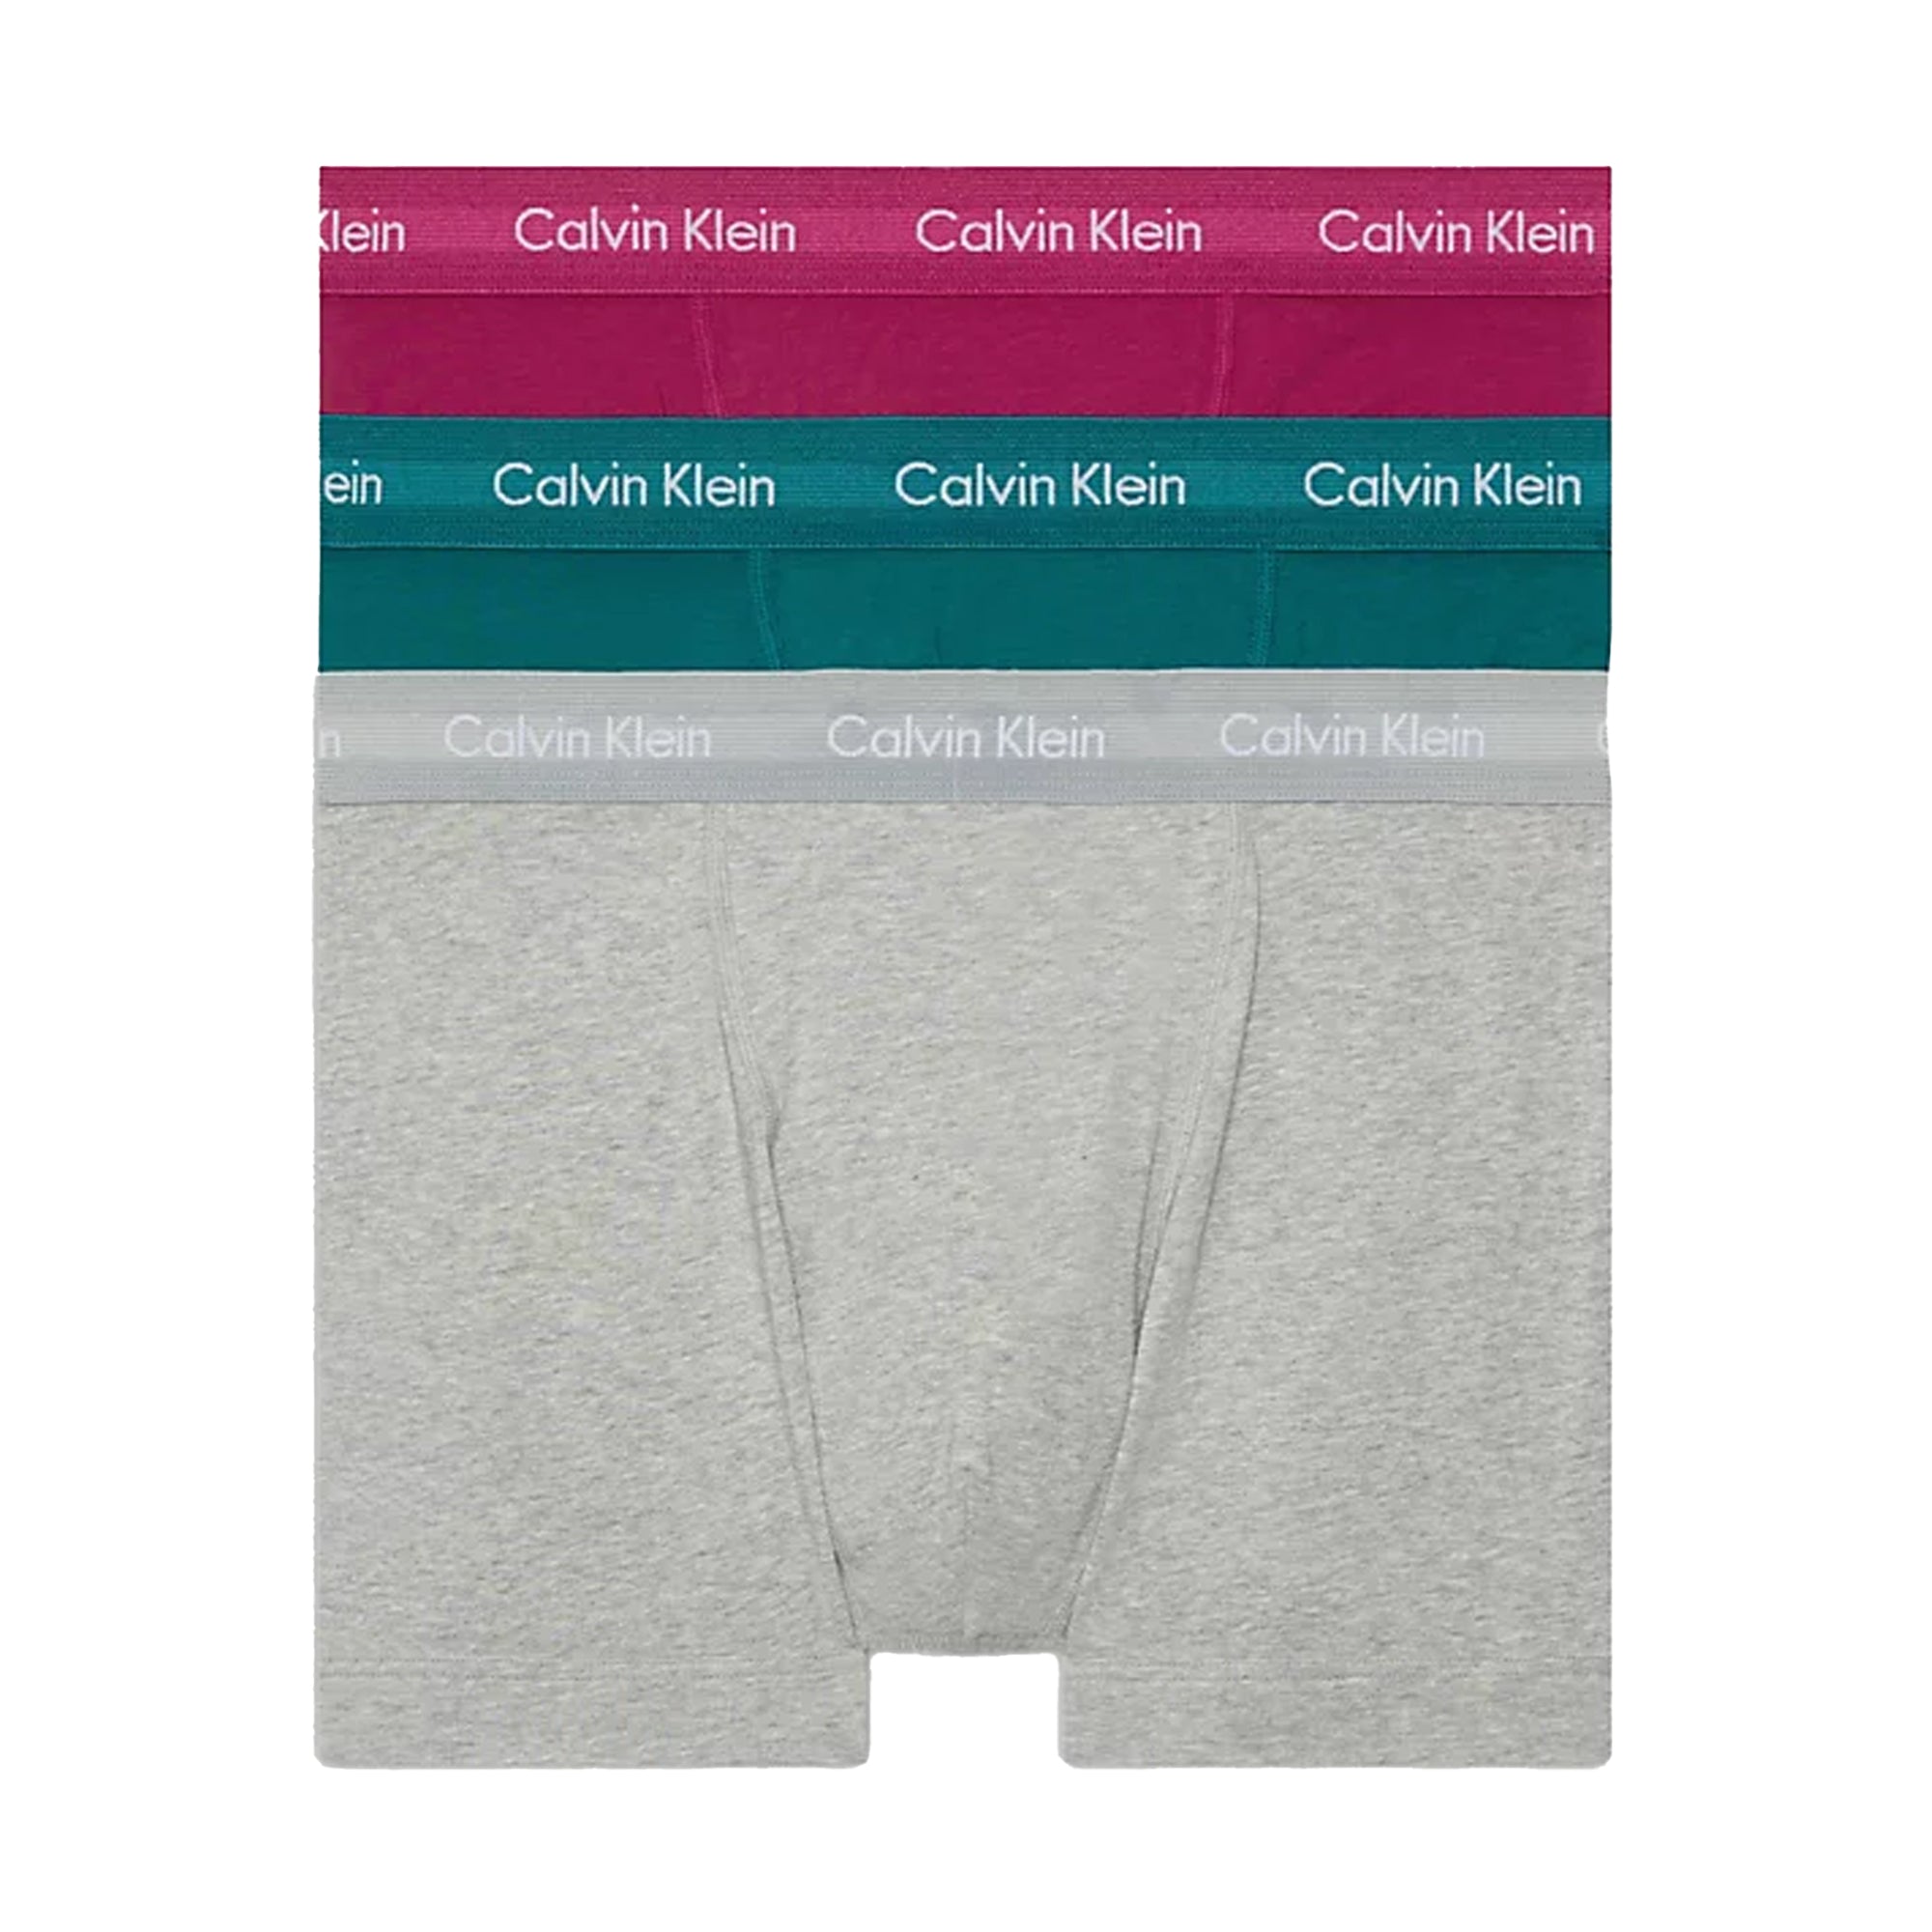 Calvin Klein Cotton Stretch Trunks - Grey Heather/Chesapeake Bay/Jewel